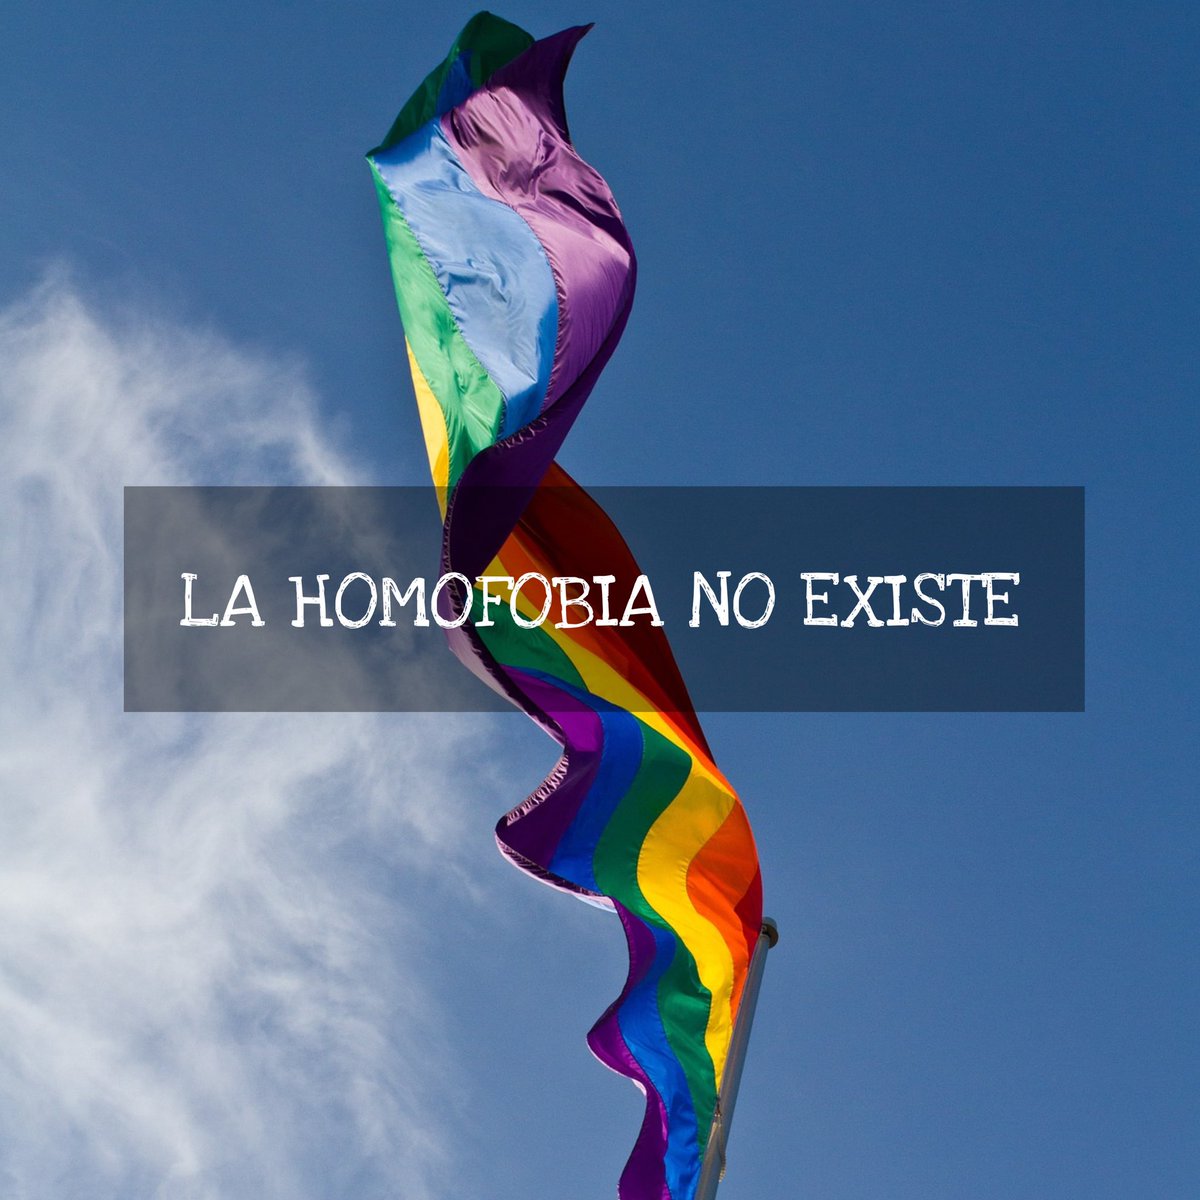 En el día internacional contra la homofobia, es bueno recordar que la “homofobia” NO EXISTE. 👨🏻‍💻 Recordemos que una “fobia” es un miedo irracional a algo. Las personas NO muestran un miedo IRRACIONAL, ante una persona con atracciones sexuales DISPERSAS. 📉 En el 2015, Emmanuele